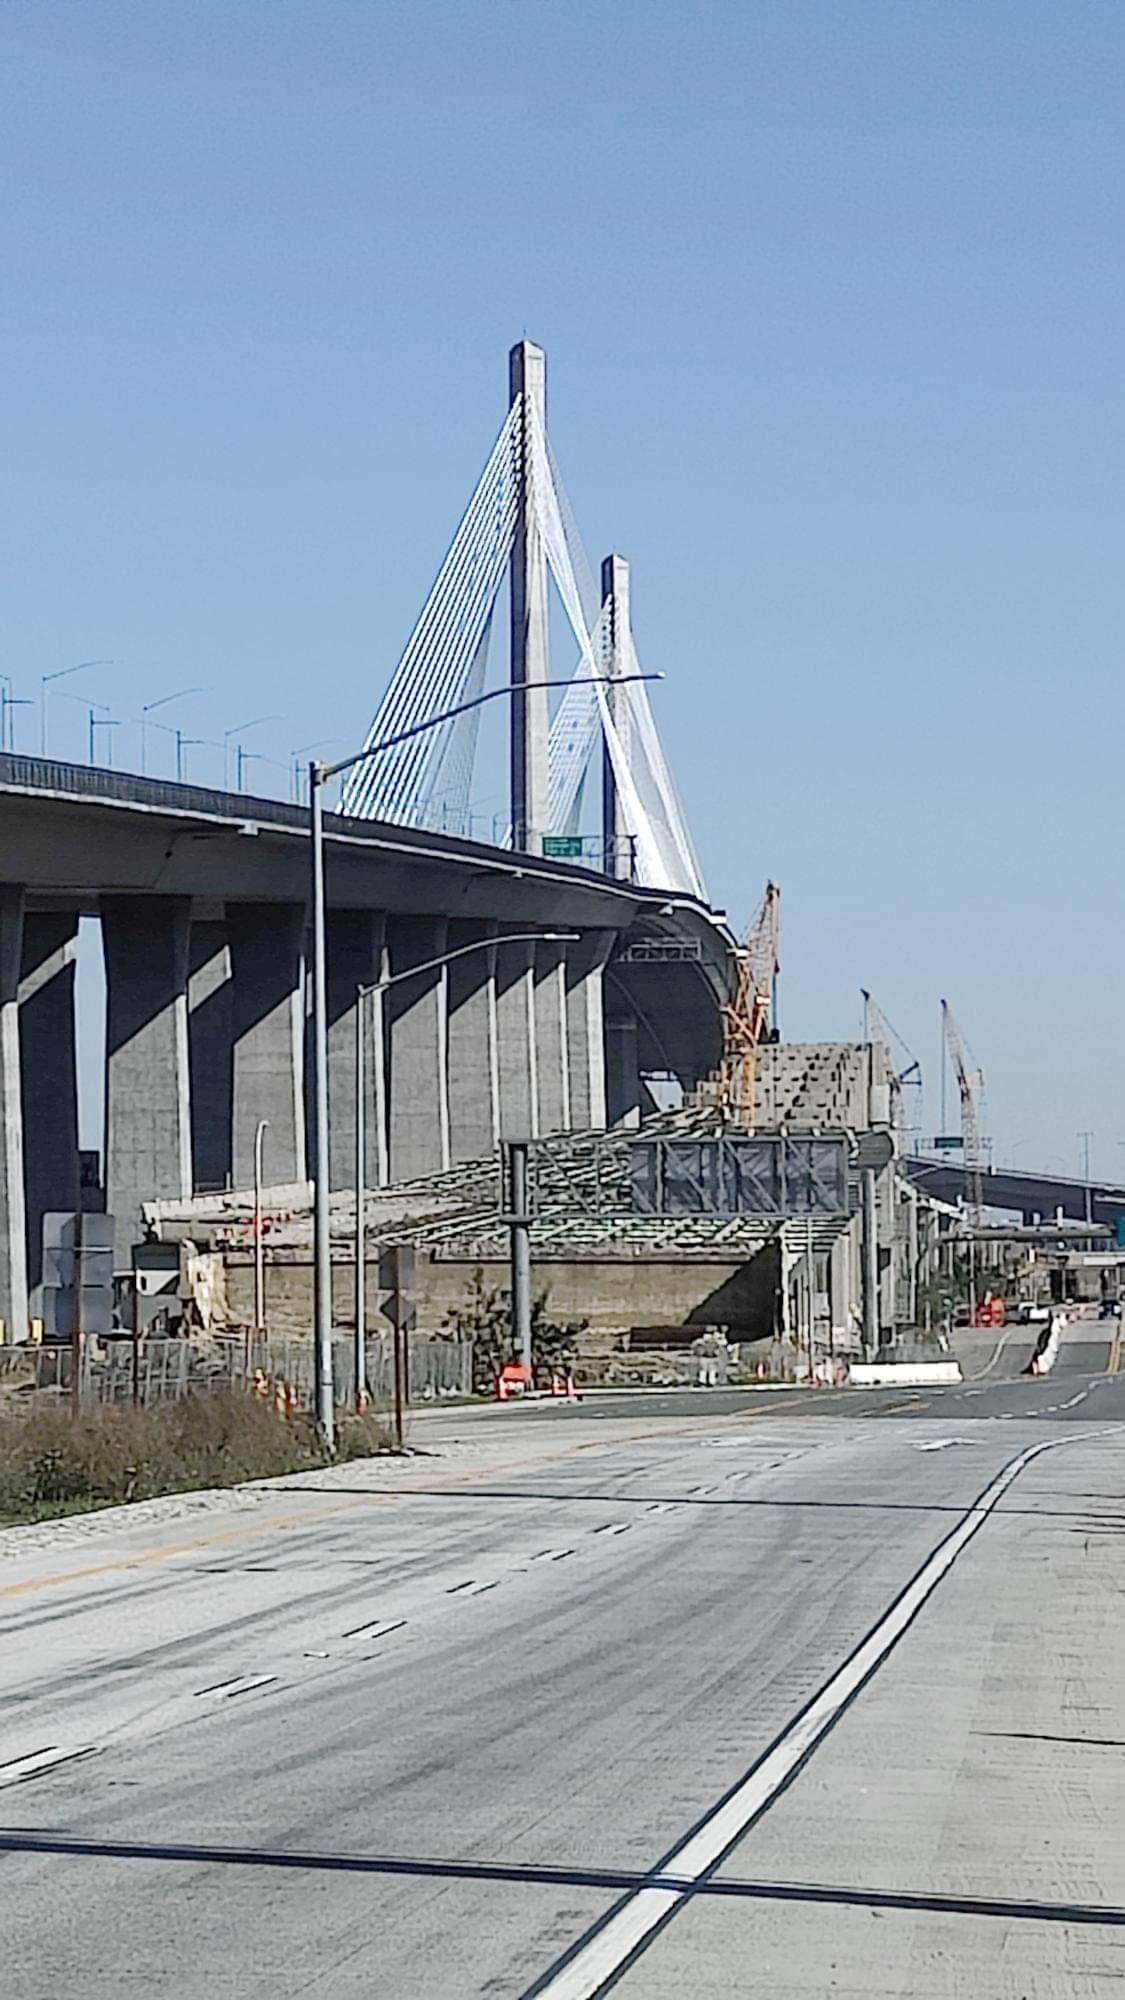 Bridge in Long Beach California